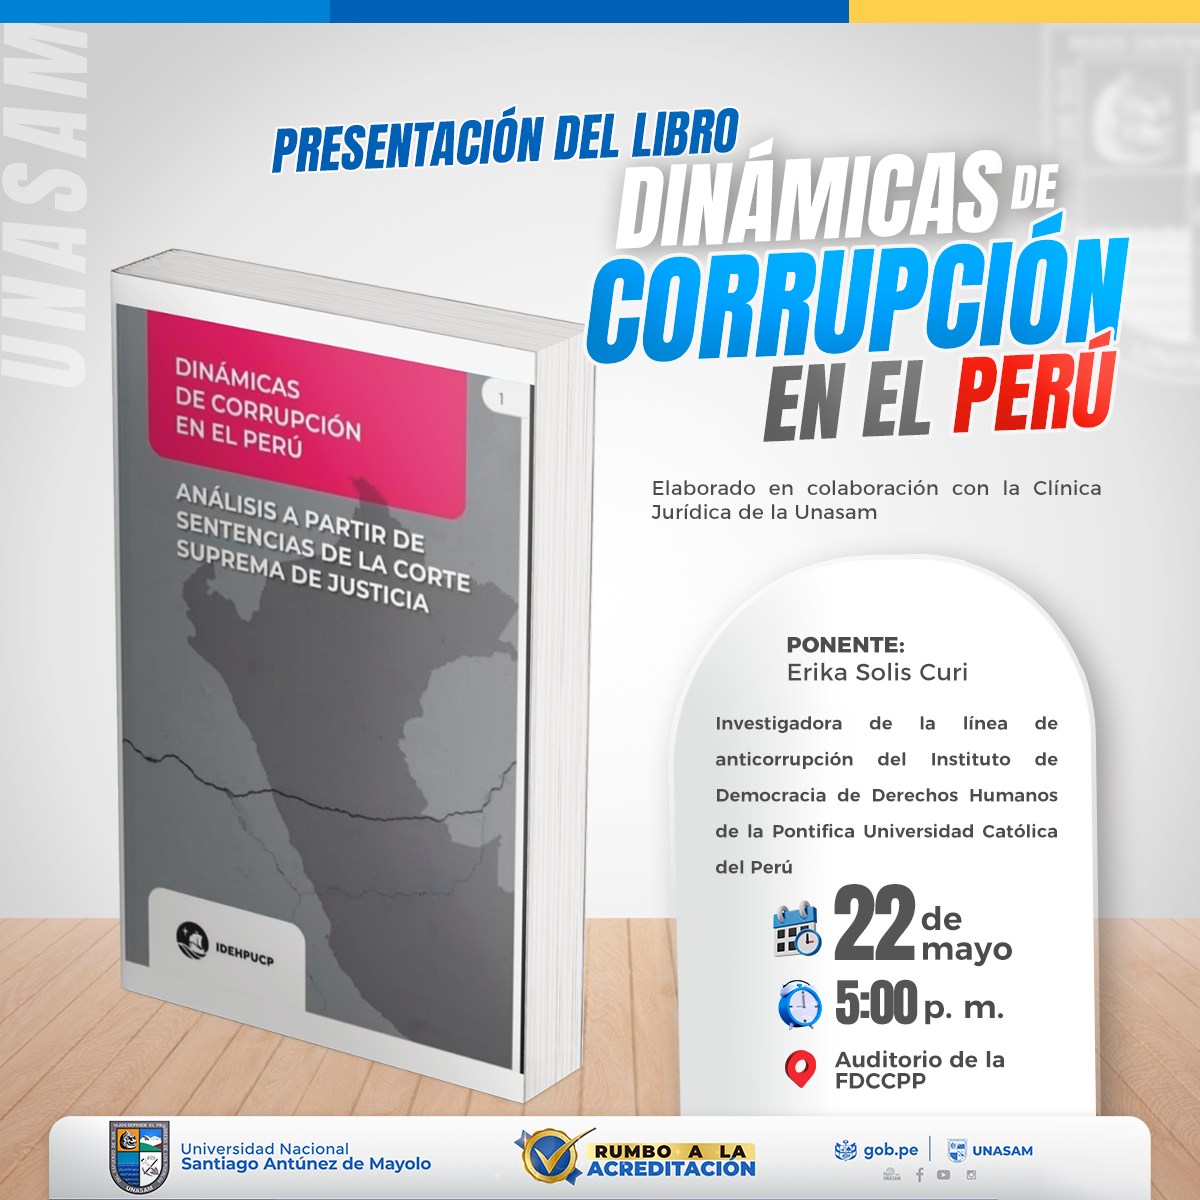  														PRESENTACIÓN DEL LIBRO: DINÁMICAS DE CORRUPCIÓN EN EL PERÚ
														